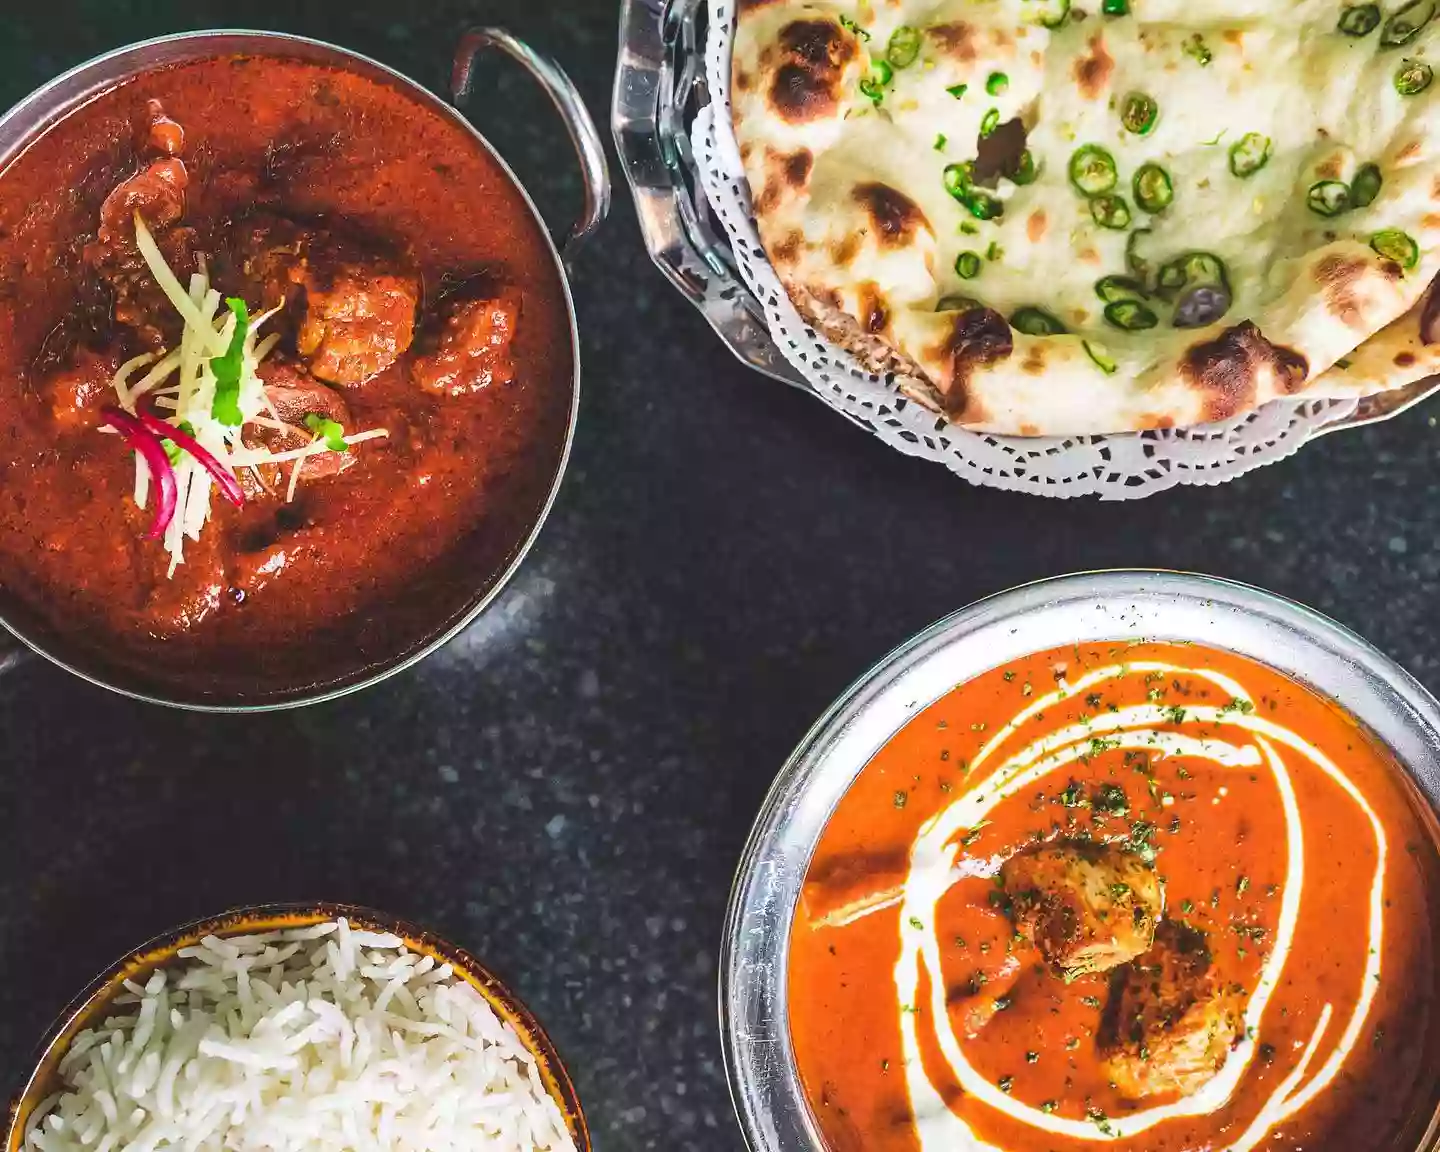 Coriander - Nepalese And Indian Restaurant Ballincollig